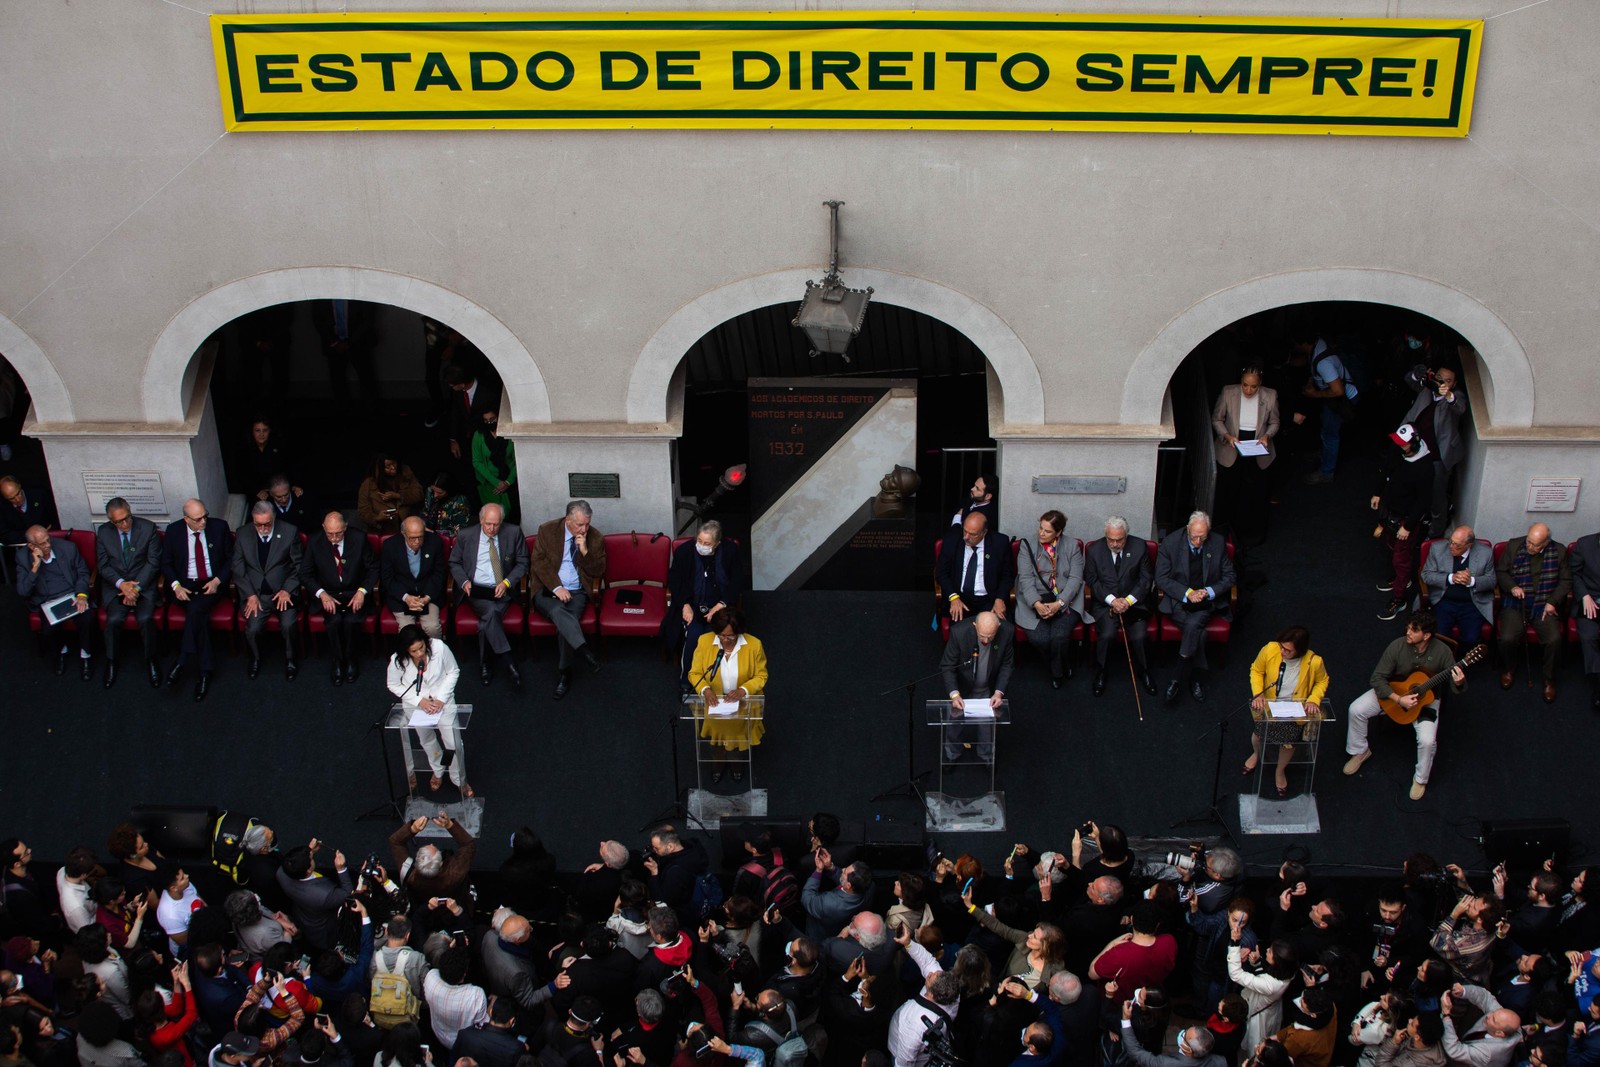 Ato em defesa da democracia em São Paulo. Foto: Maria Isabel Oliveira/Agência O Globo